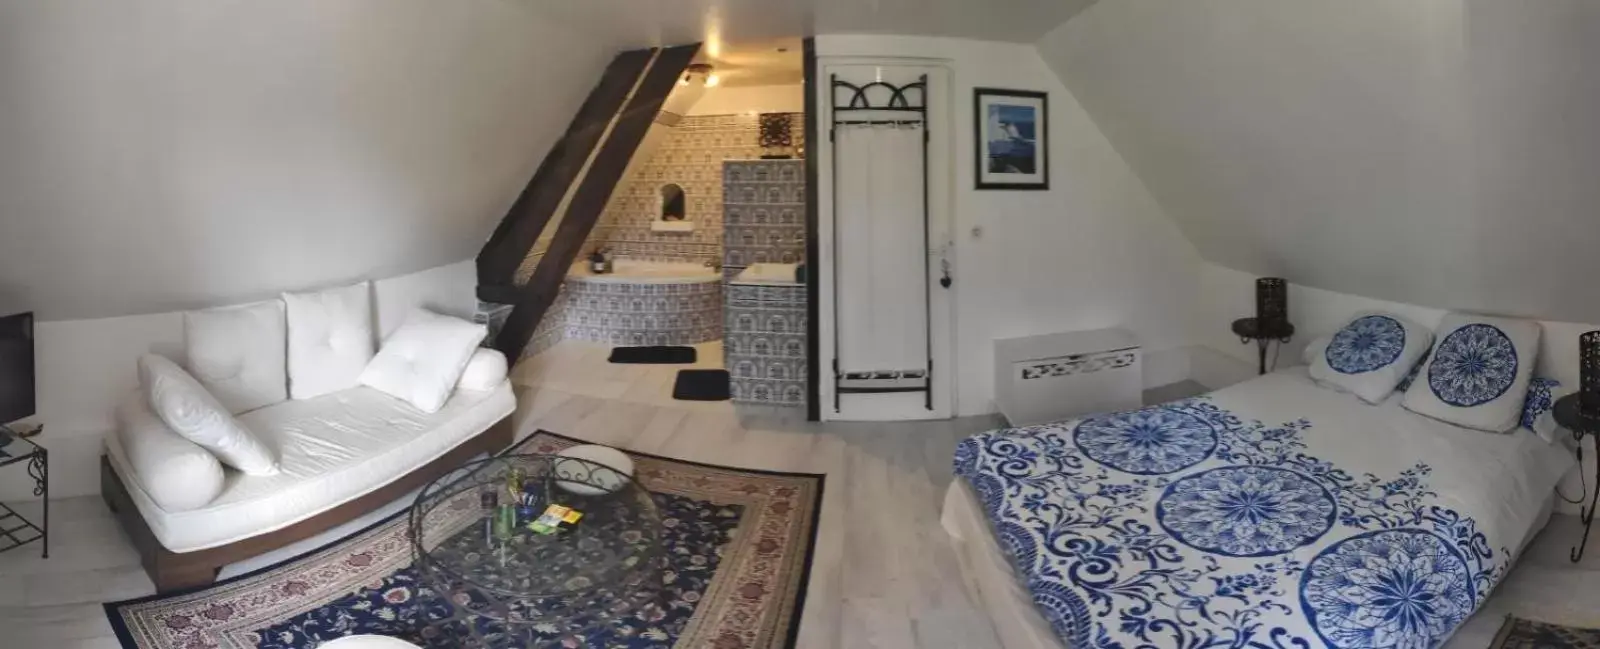 Double Room with Private Bathroom in Chez Aurélia - Chambres et suite